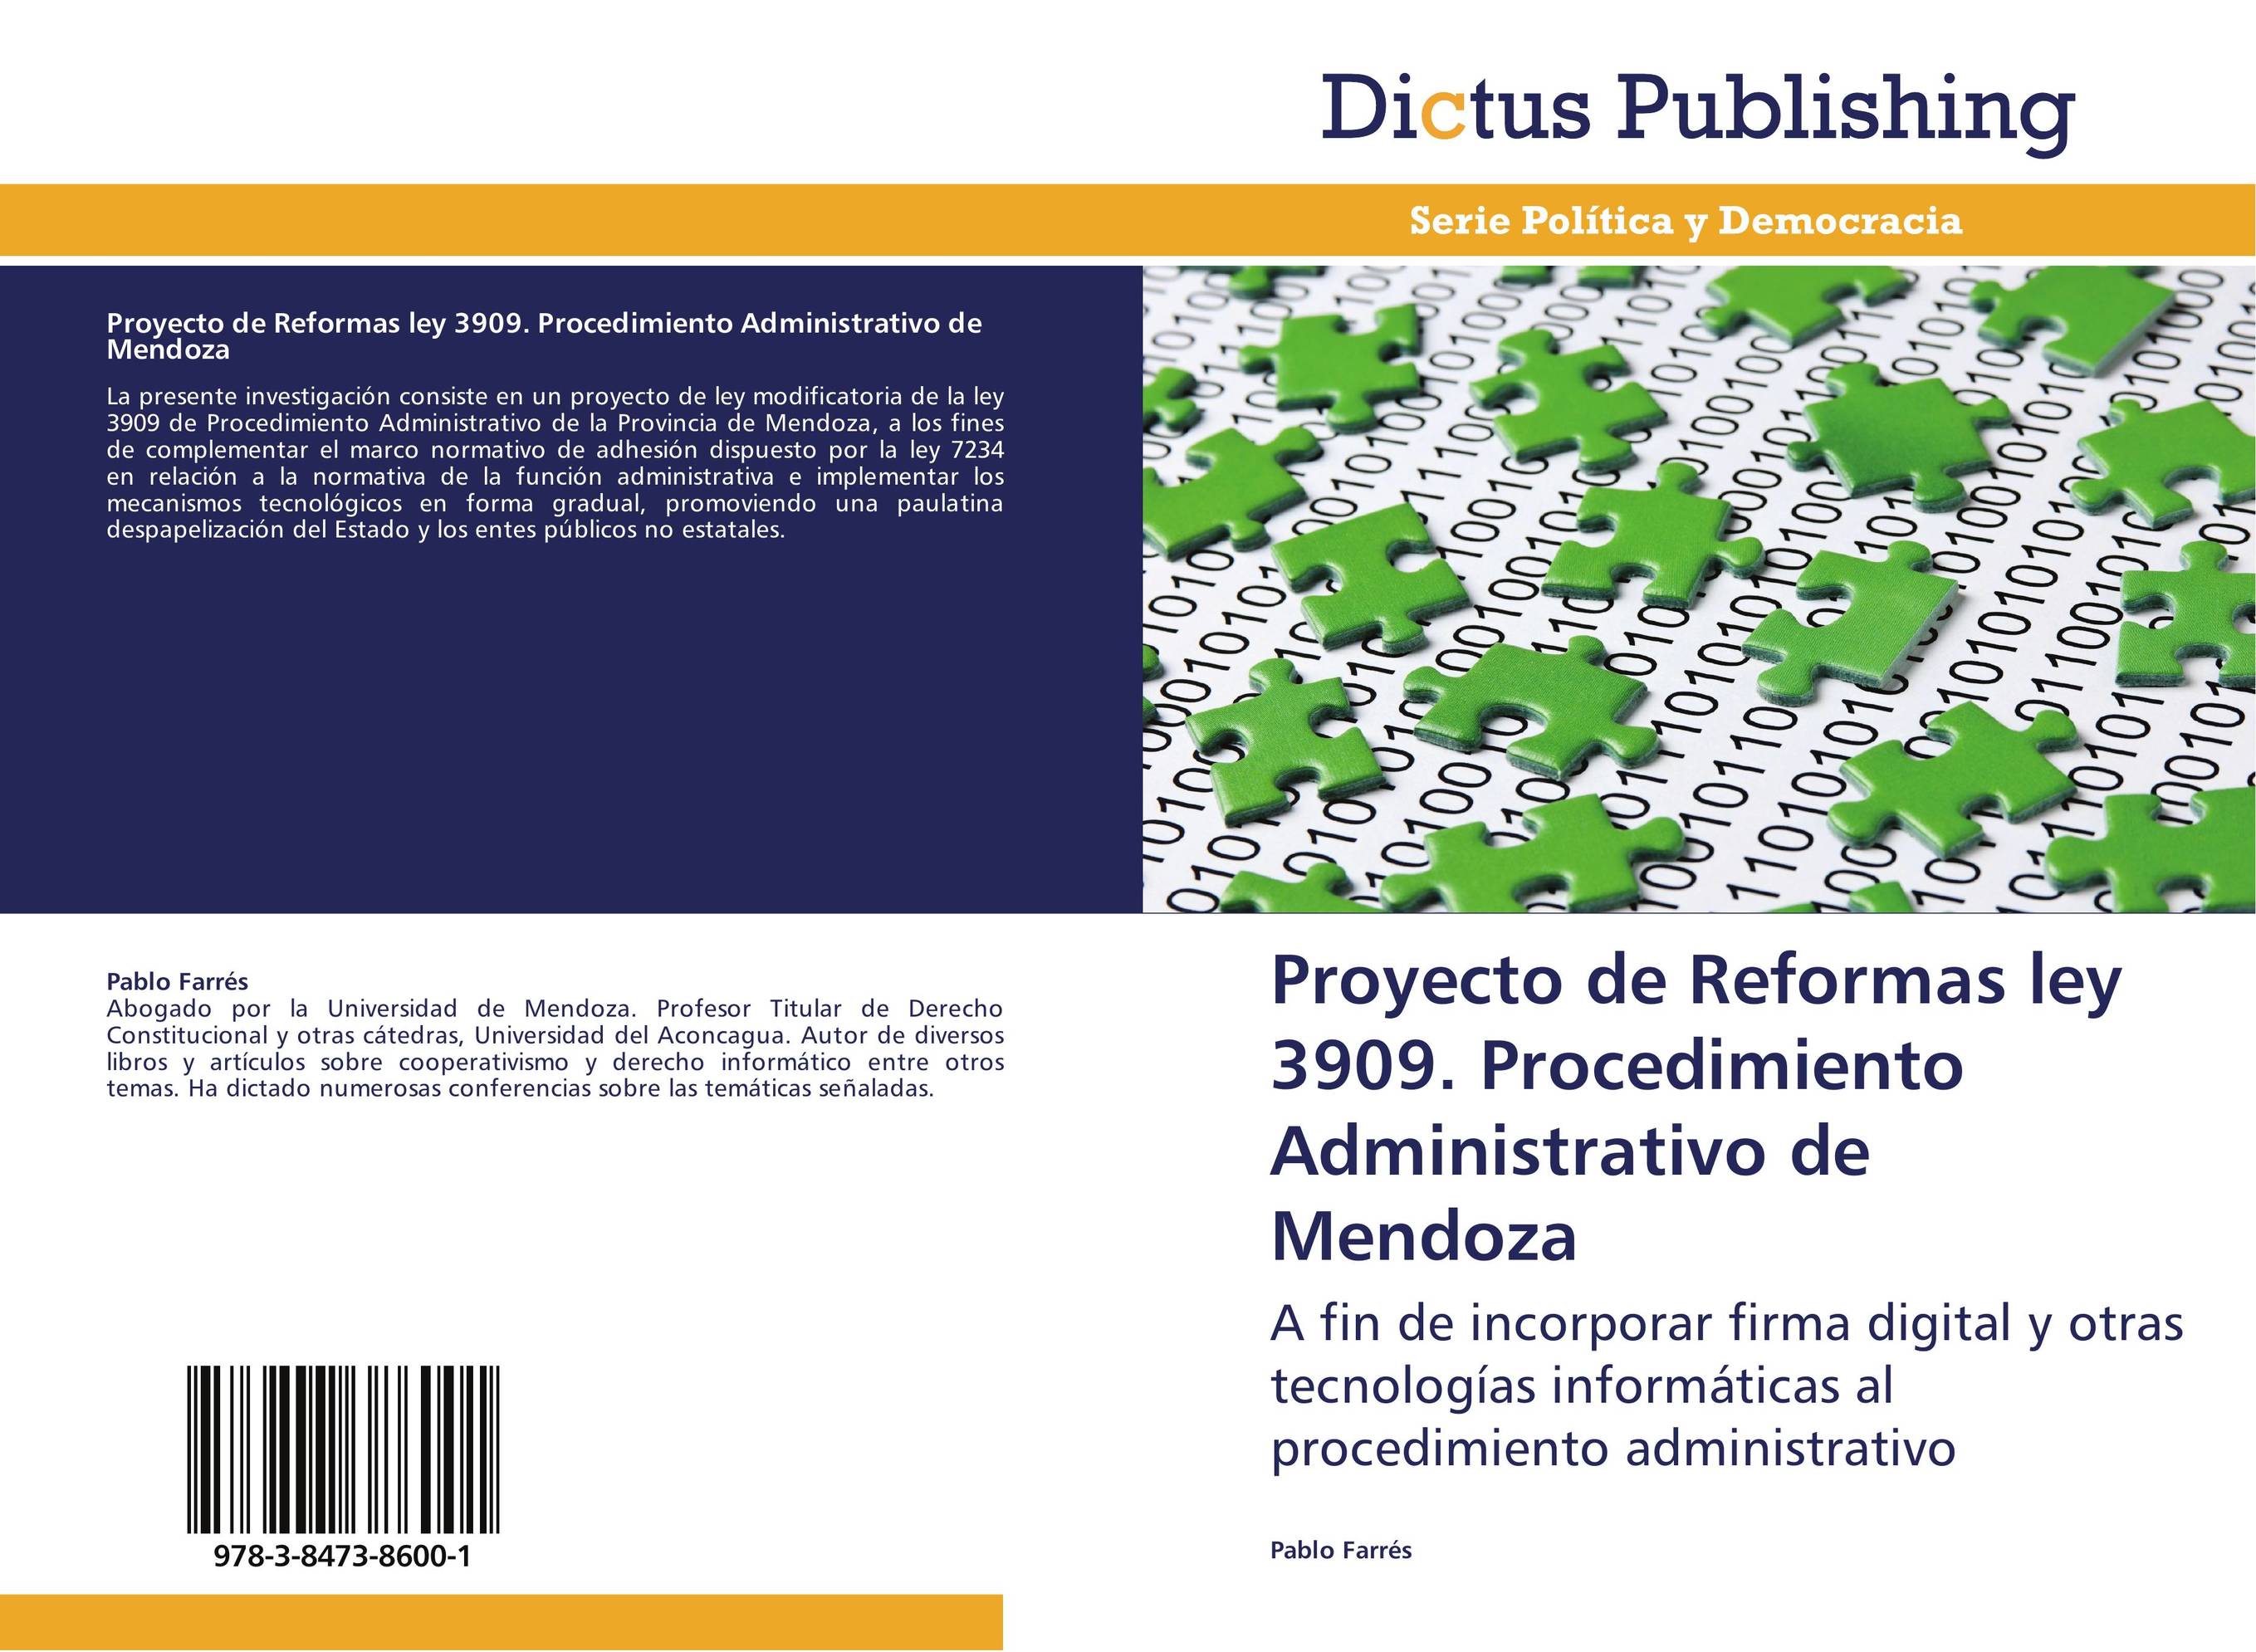 Proyecto de Reformas ley 3909. Procedimiento Administrativo de Mendoza